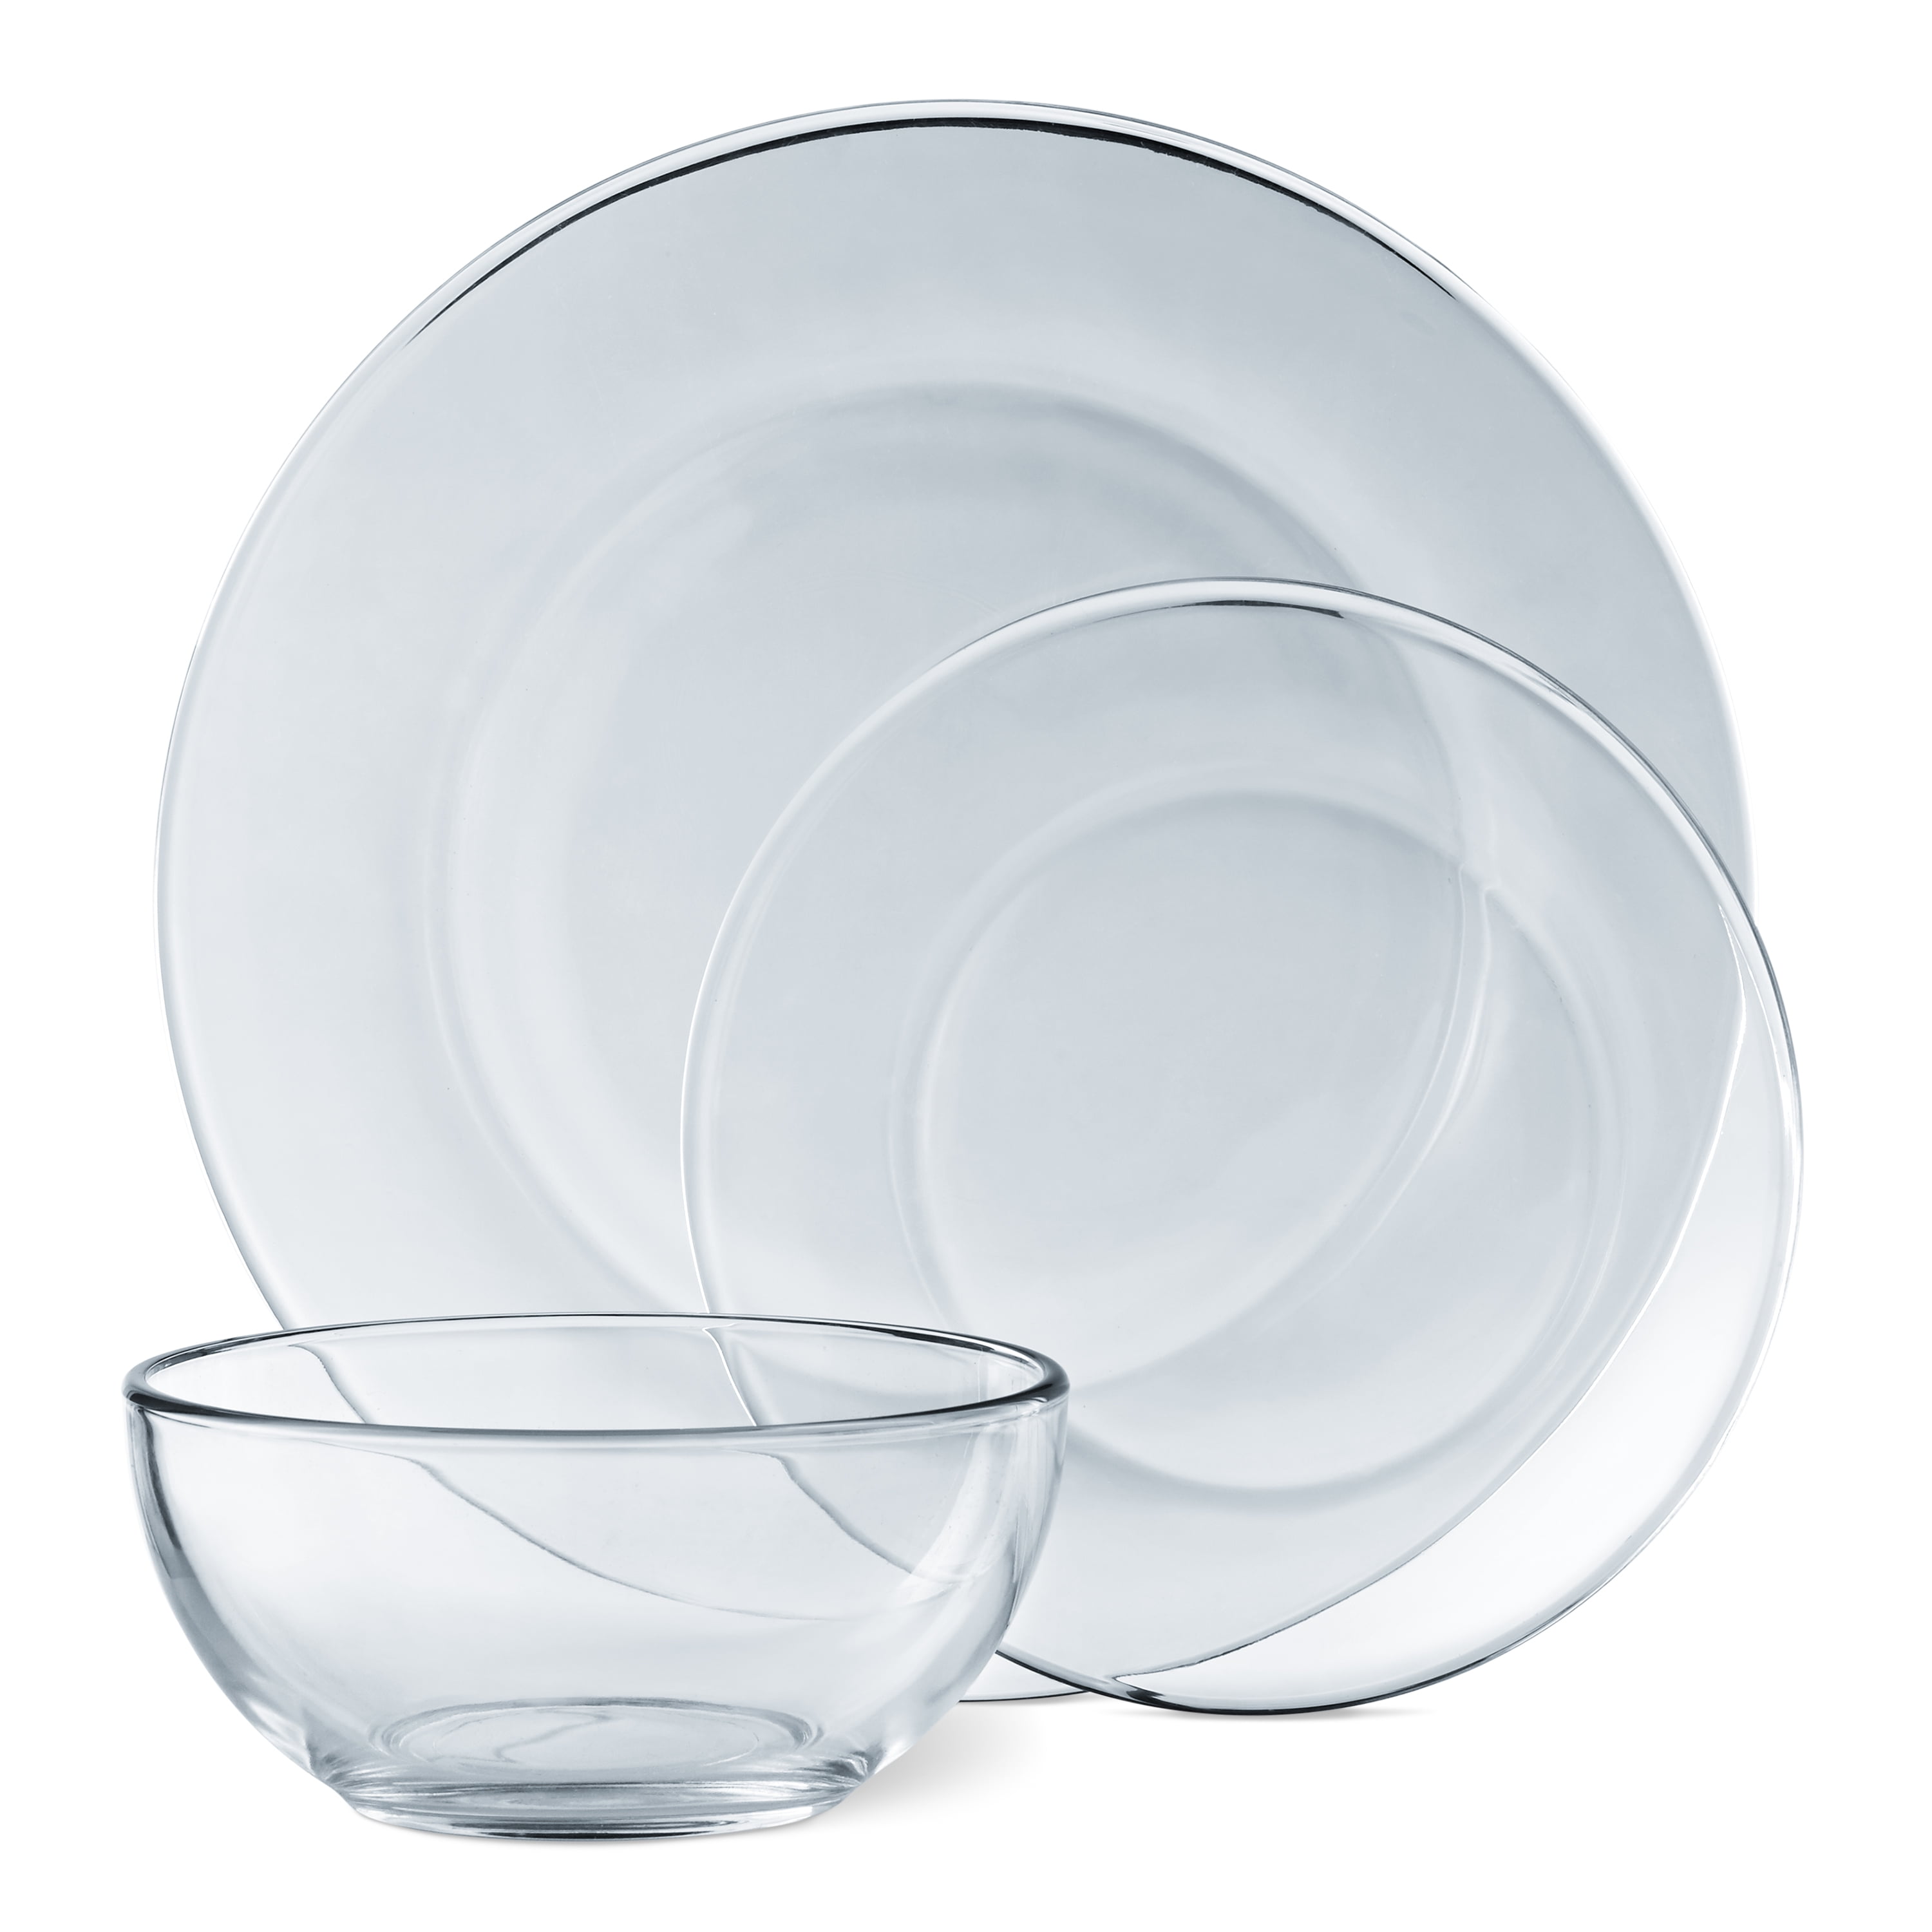 Mainstays 12-Piece Round Clear Glass Dinnerware Set